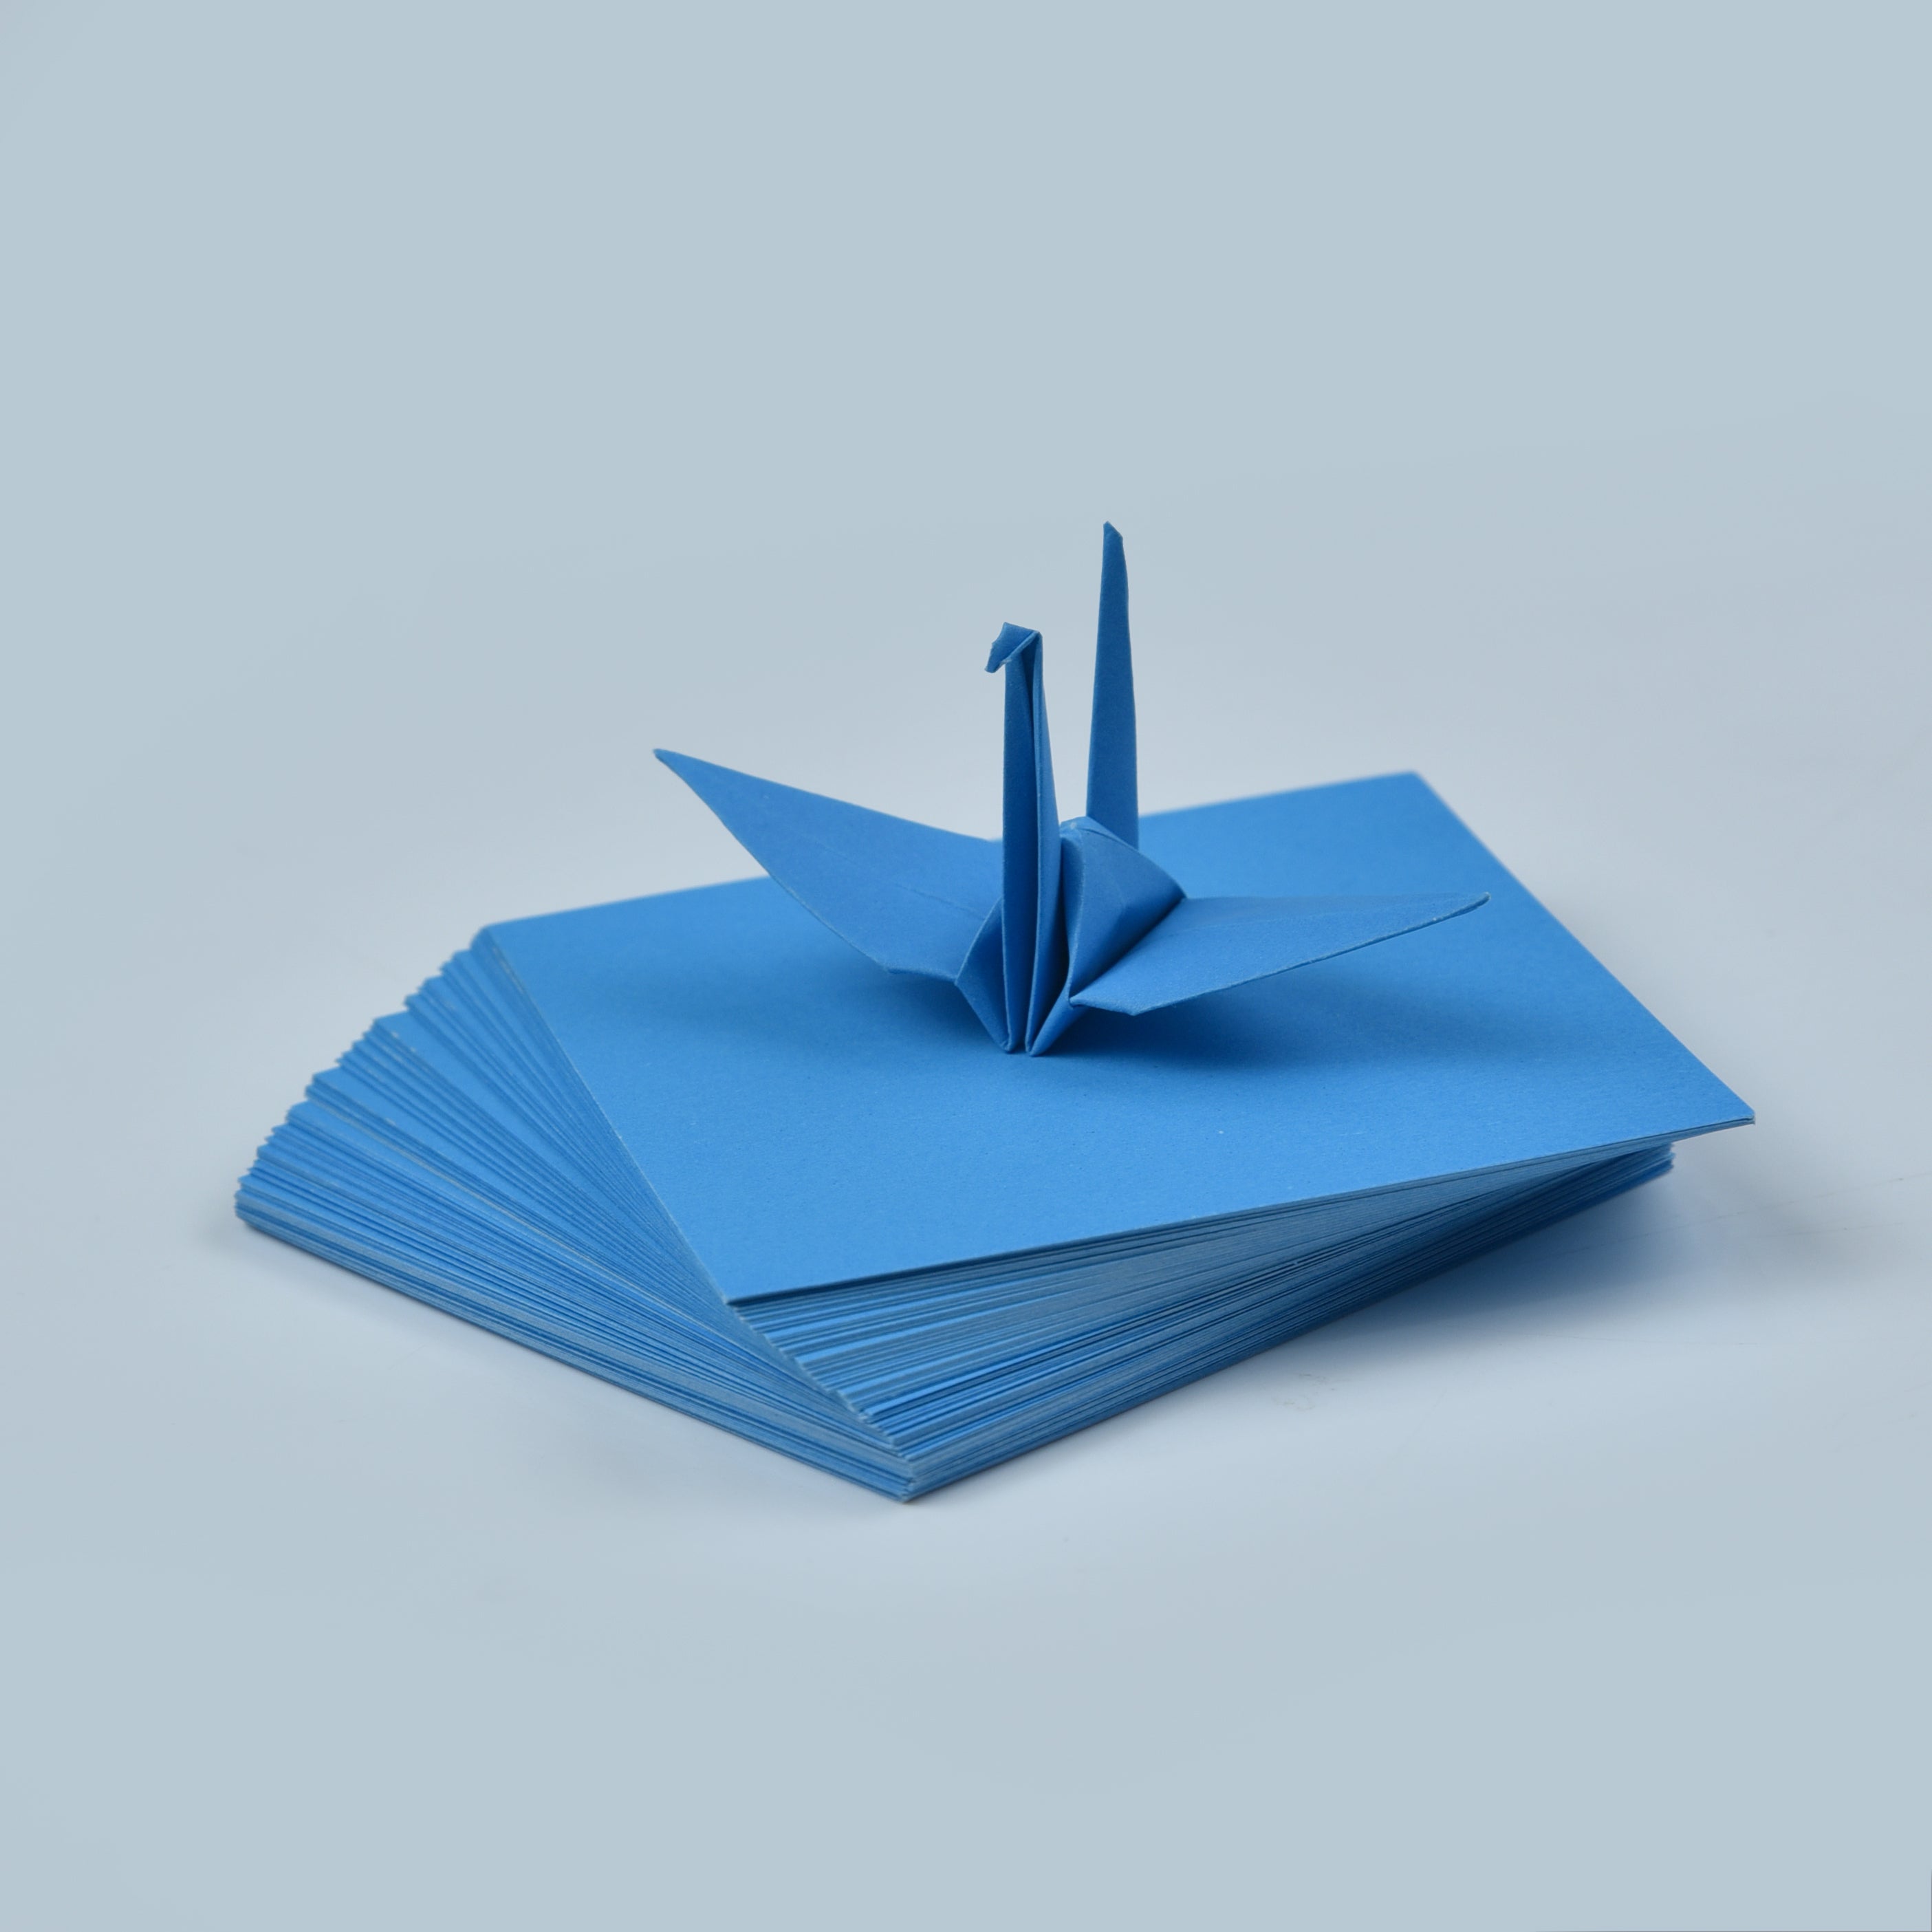 100 Hojas de Papel Origami - 3x3 pulgadas - Paquete de Papel Cuadrado para Plegar, Grullas de Origami y Decoración - S18